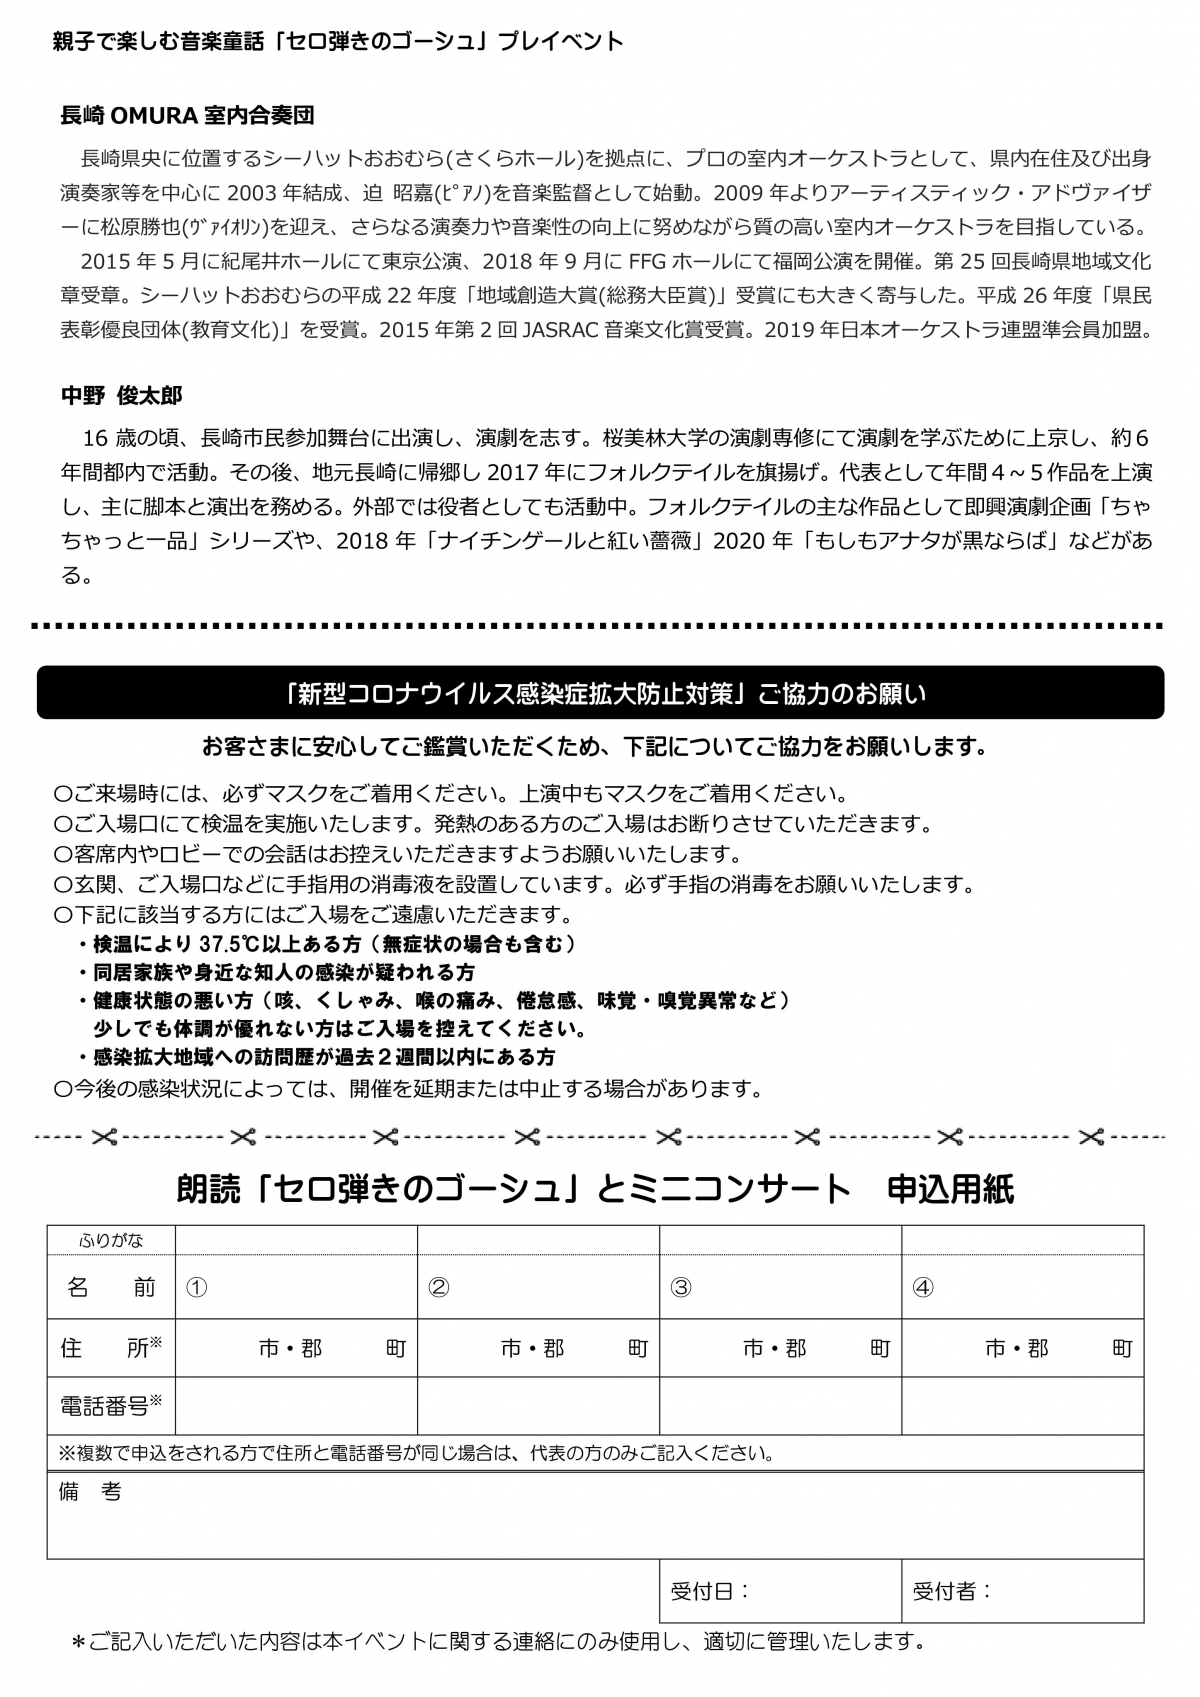 ミニコンサートちらし裏・申込用紙.pdf